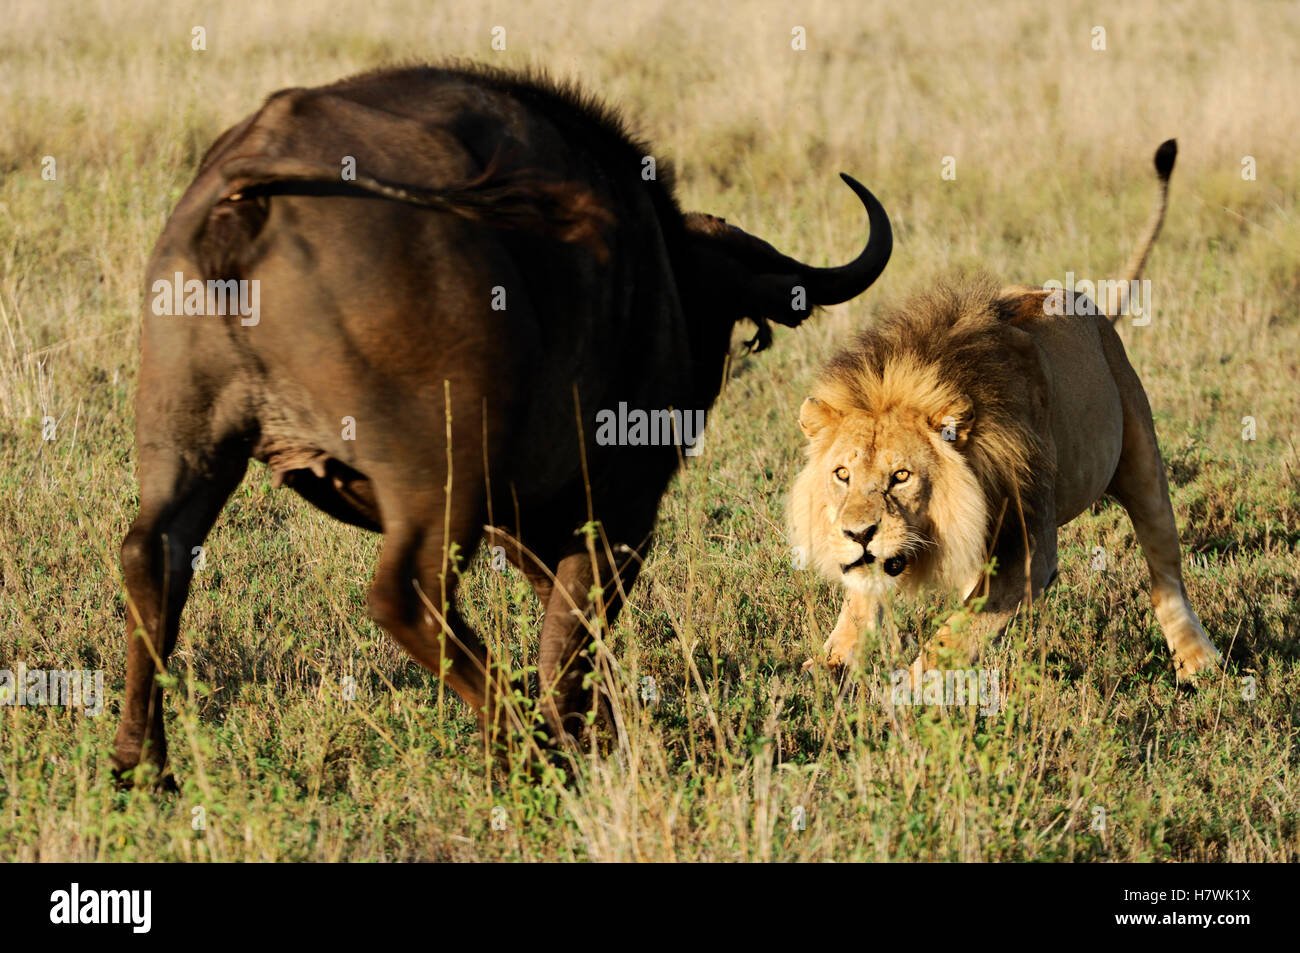 Битва животных в природе видео. Охота Львов в дикой природе на буйволов. Лев охотится.